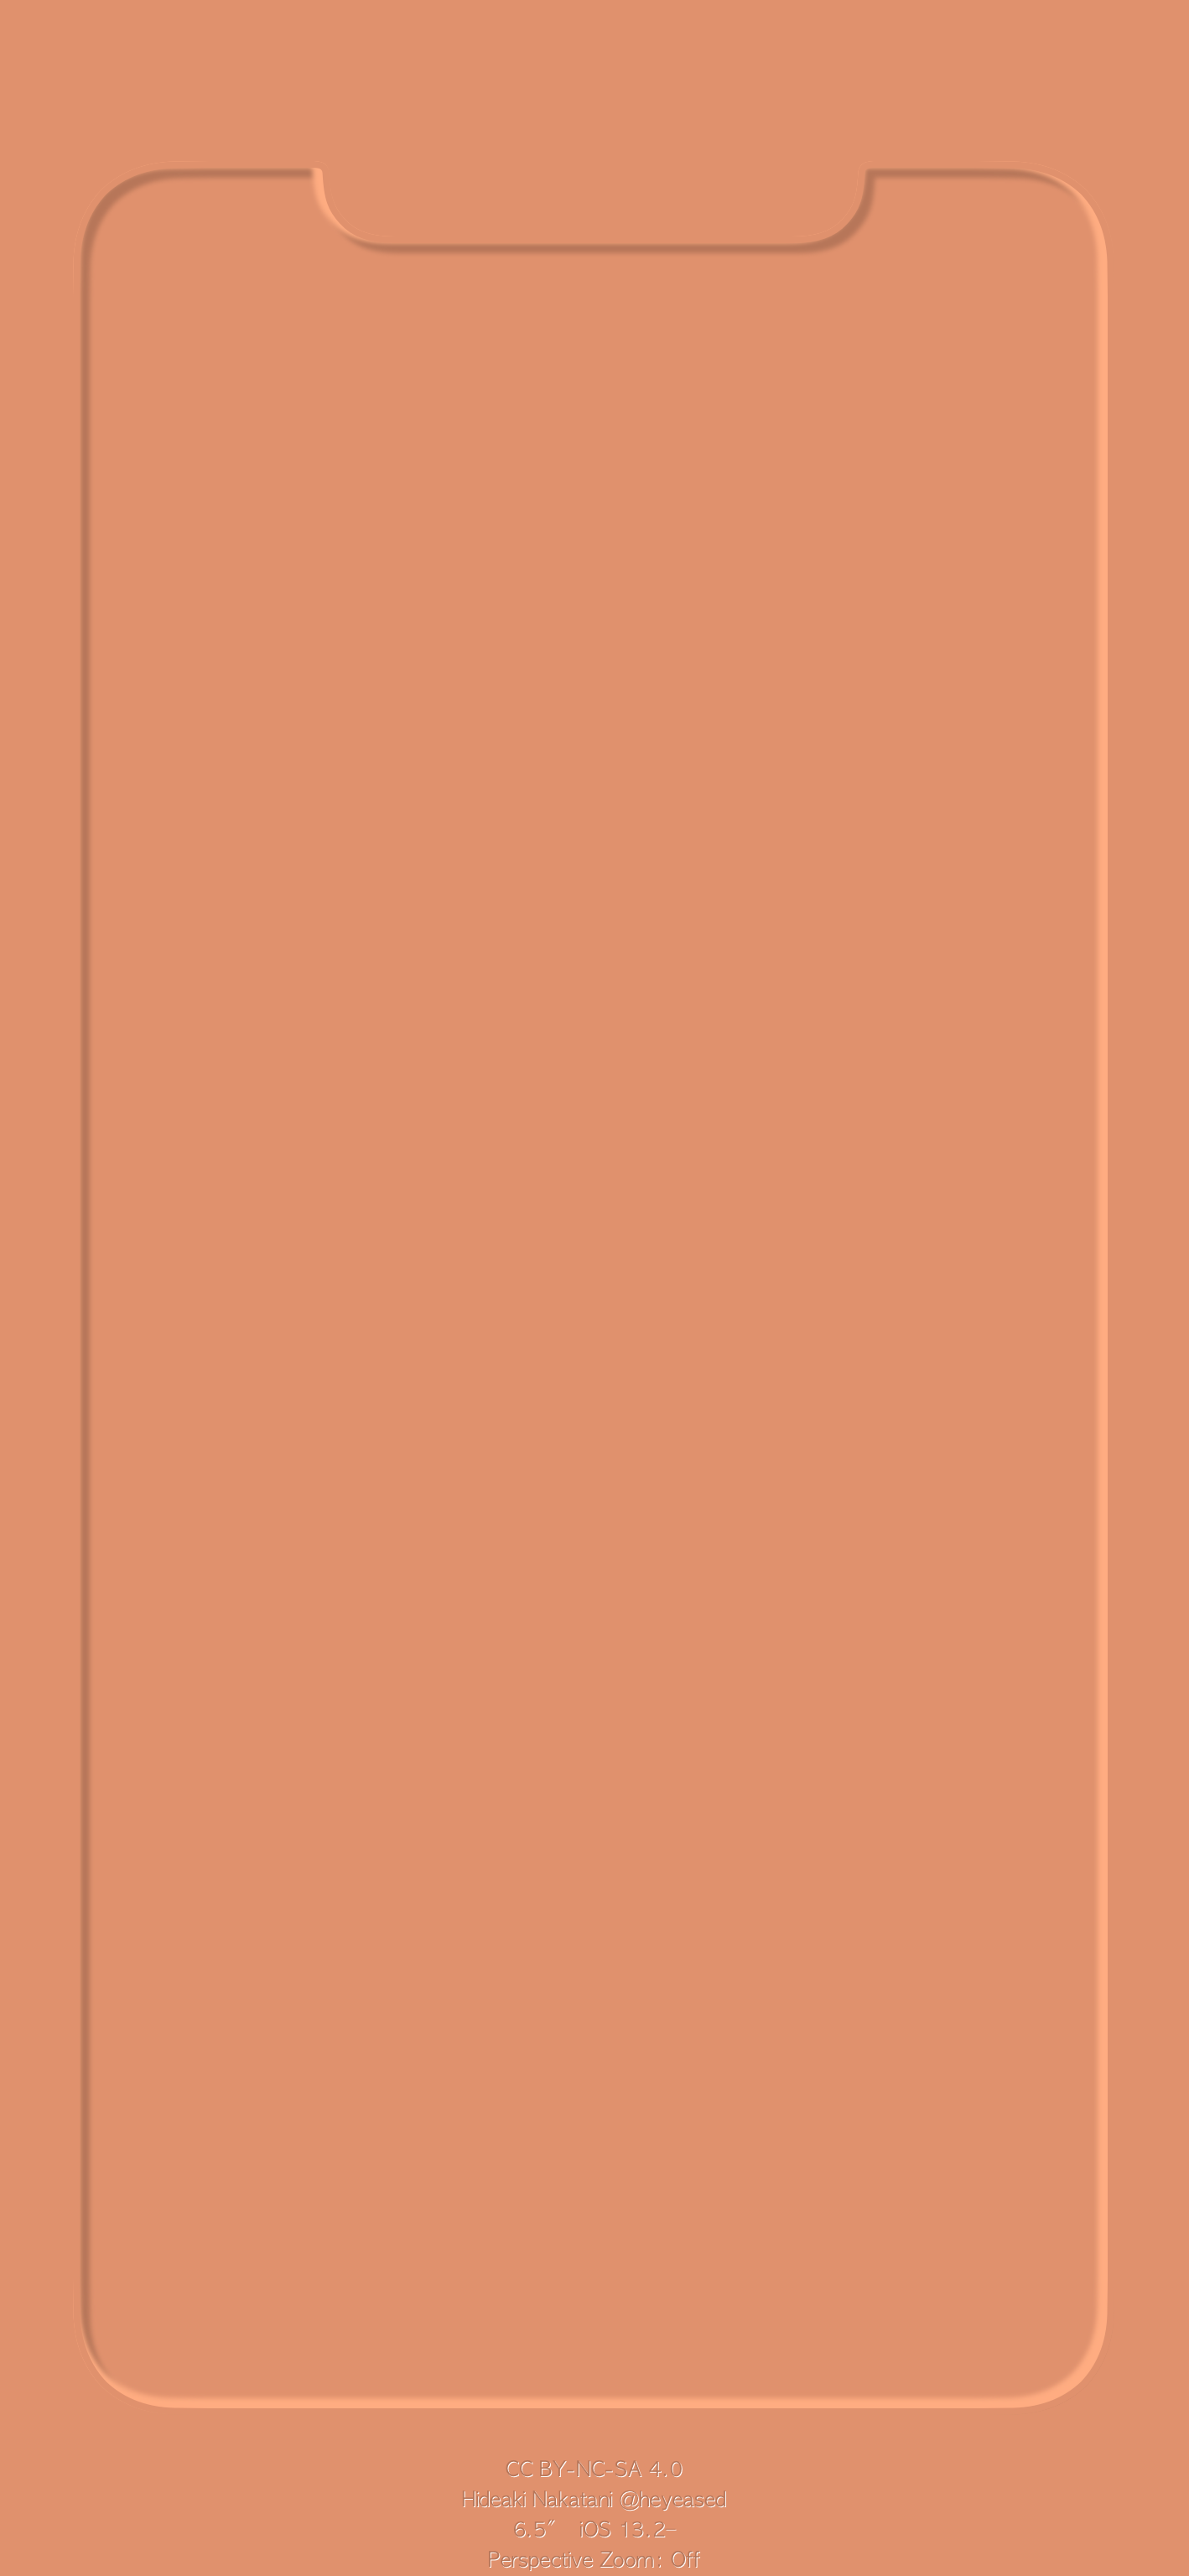 3d border max orange iphone wallpaper heyeased idownloadblog